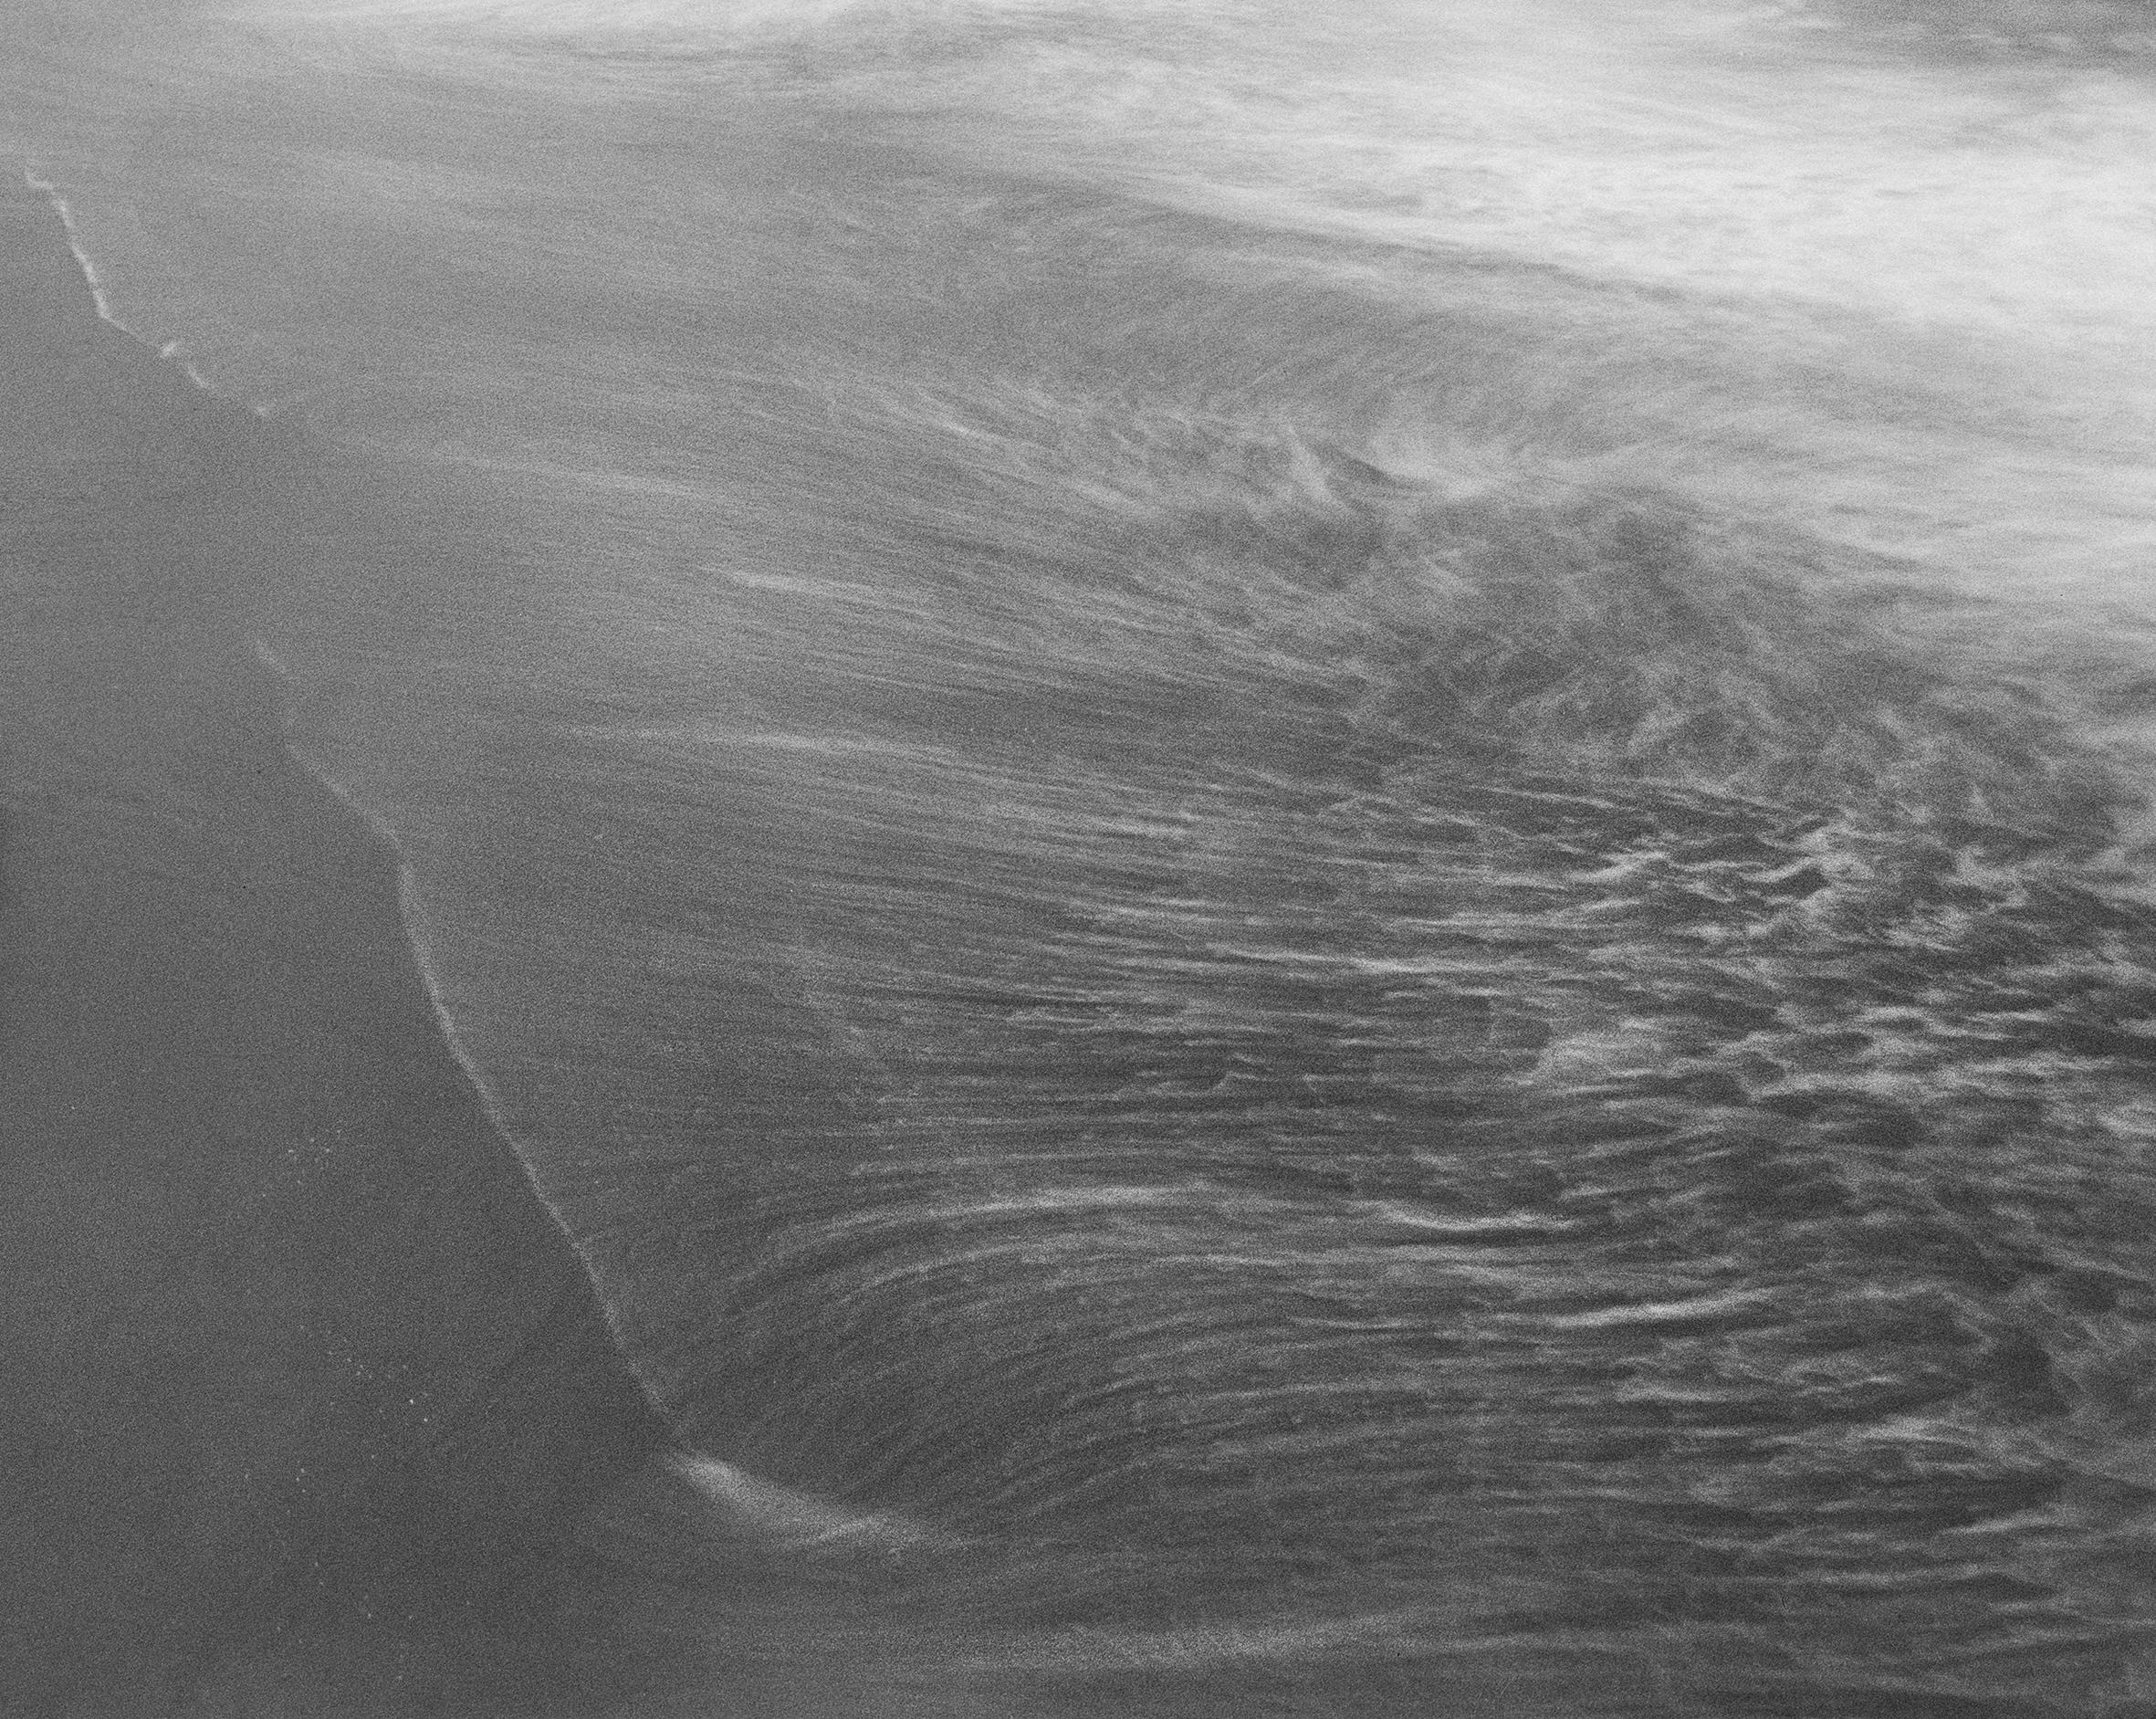 Longue plage

Embarquez pour un voyage serein sur la côte ouest avec cette évocatrice photographie analogique 4x5 en noir et blanc, offrant un aperçu de Long Beach à San Francisco.

Capturée à partir d'une perspective légèrement surélevée, l'image